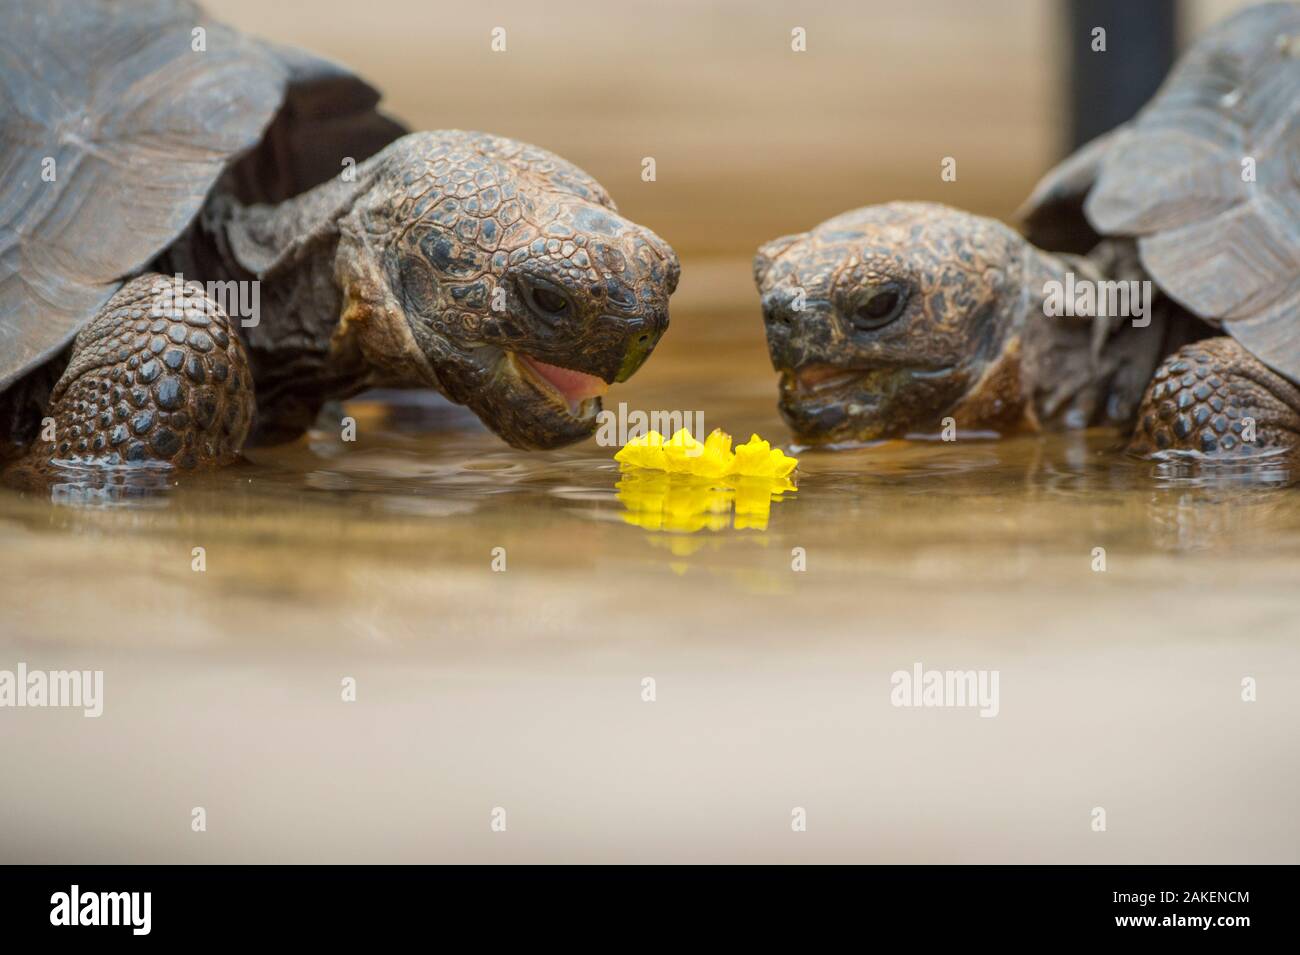 La tortuga gigante Floreana descendientes híbridos (Chelonoidis  elephantopus) alimentación en flor. Estos son descendientes de la tortuga  gigante Floreana extintos, pero son hibridadas con otras especies. Fausto  Llerena Trotoise gigante centro de